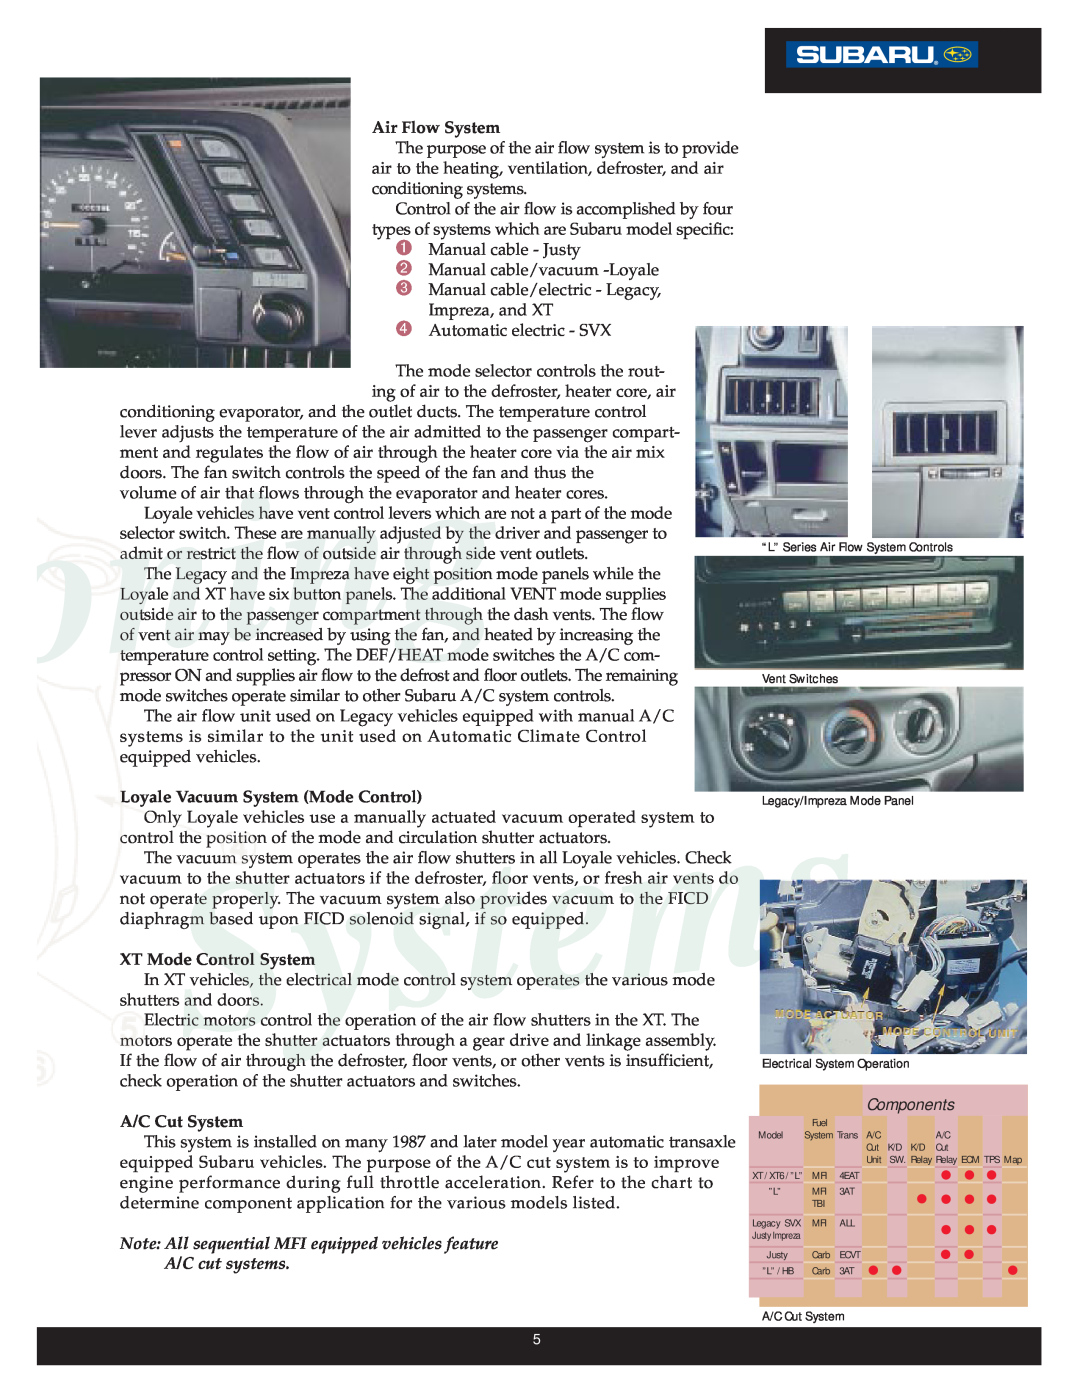 Subaru R-134A, R-12 Air Flow System, Loyale Vacuum System Mode Control, XT Mode Control System, A/C Cut System, Systems 